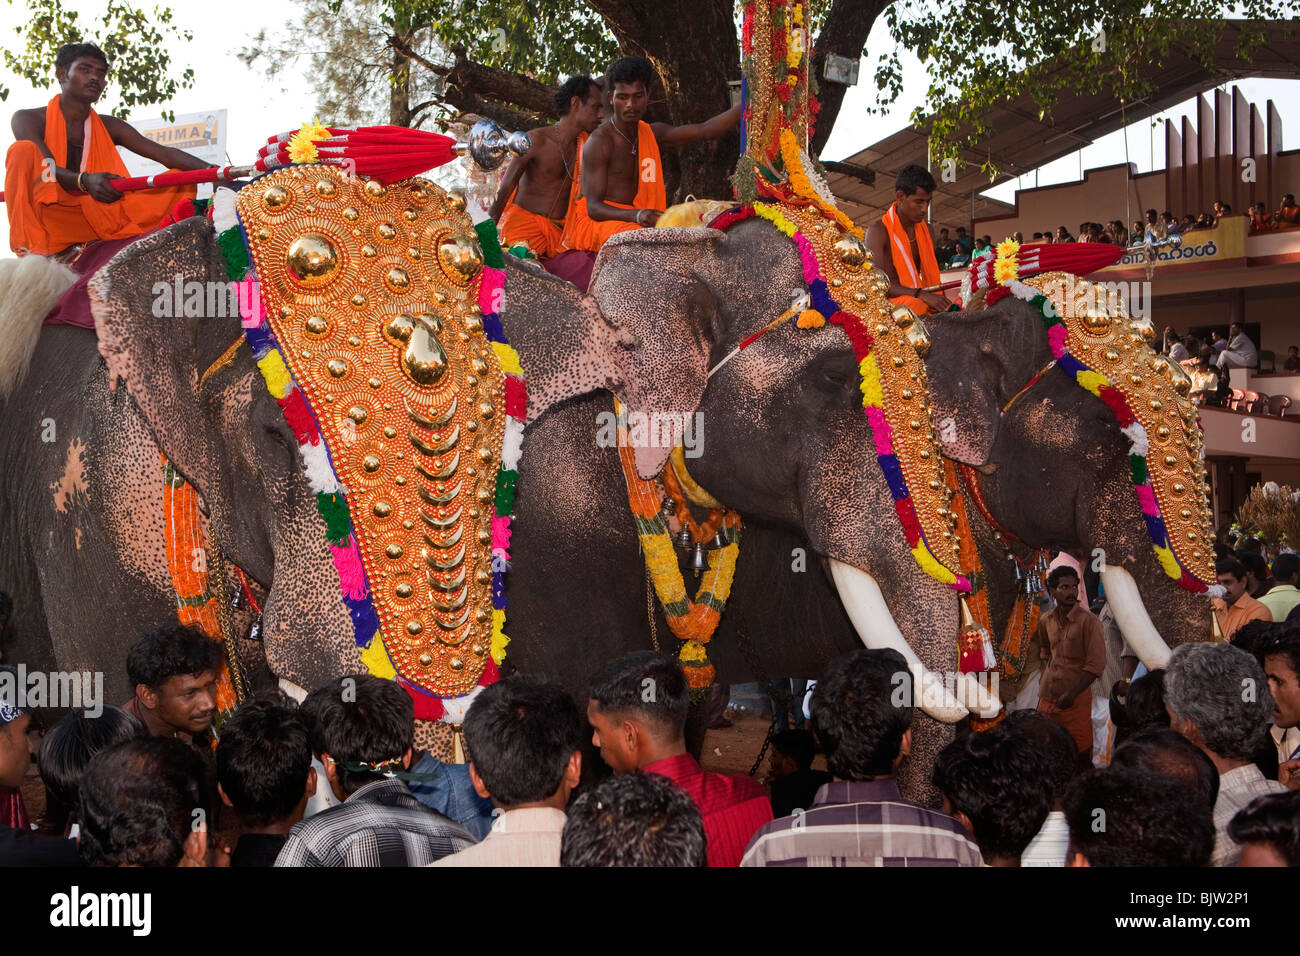 L'Inde, le Kerala, Koorkancherry Thaipooya Maheswara, Temple Sree Mahotsavam festival, trois éléphants temple caparisoned Banque D'Images